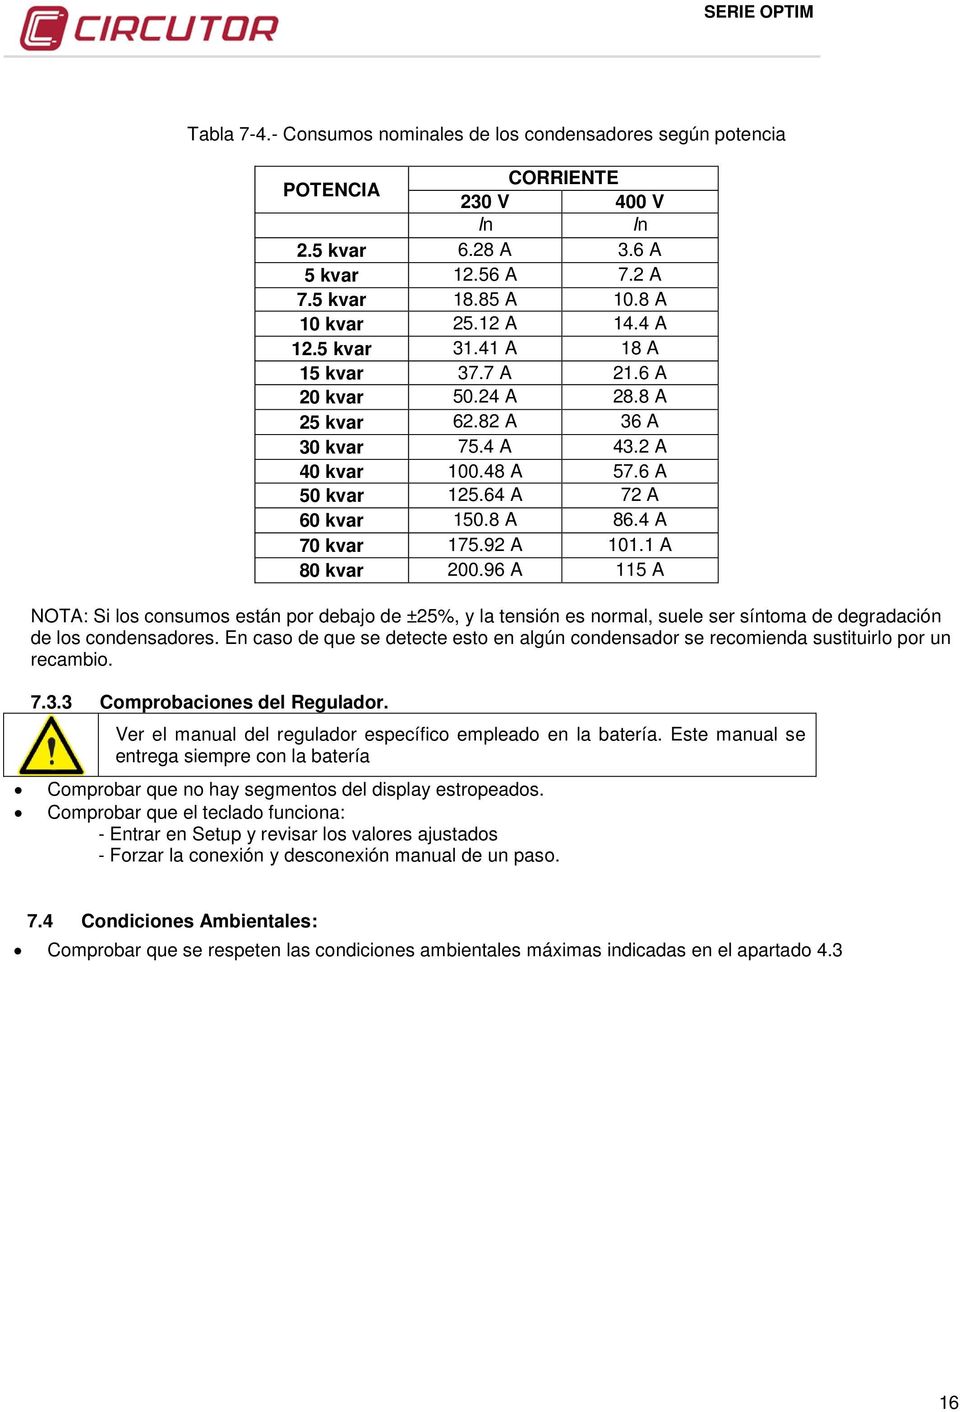 1 A 80 kvar 200.96 A 115 A NOTA: Si los consumos están por debajo de ±25%, y la tensión es normal, suele ser síntoma de degradación de los condensadores.